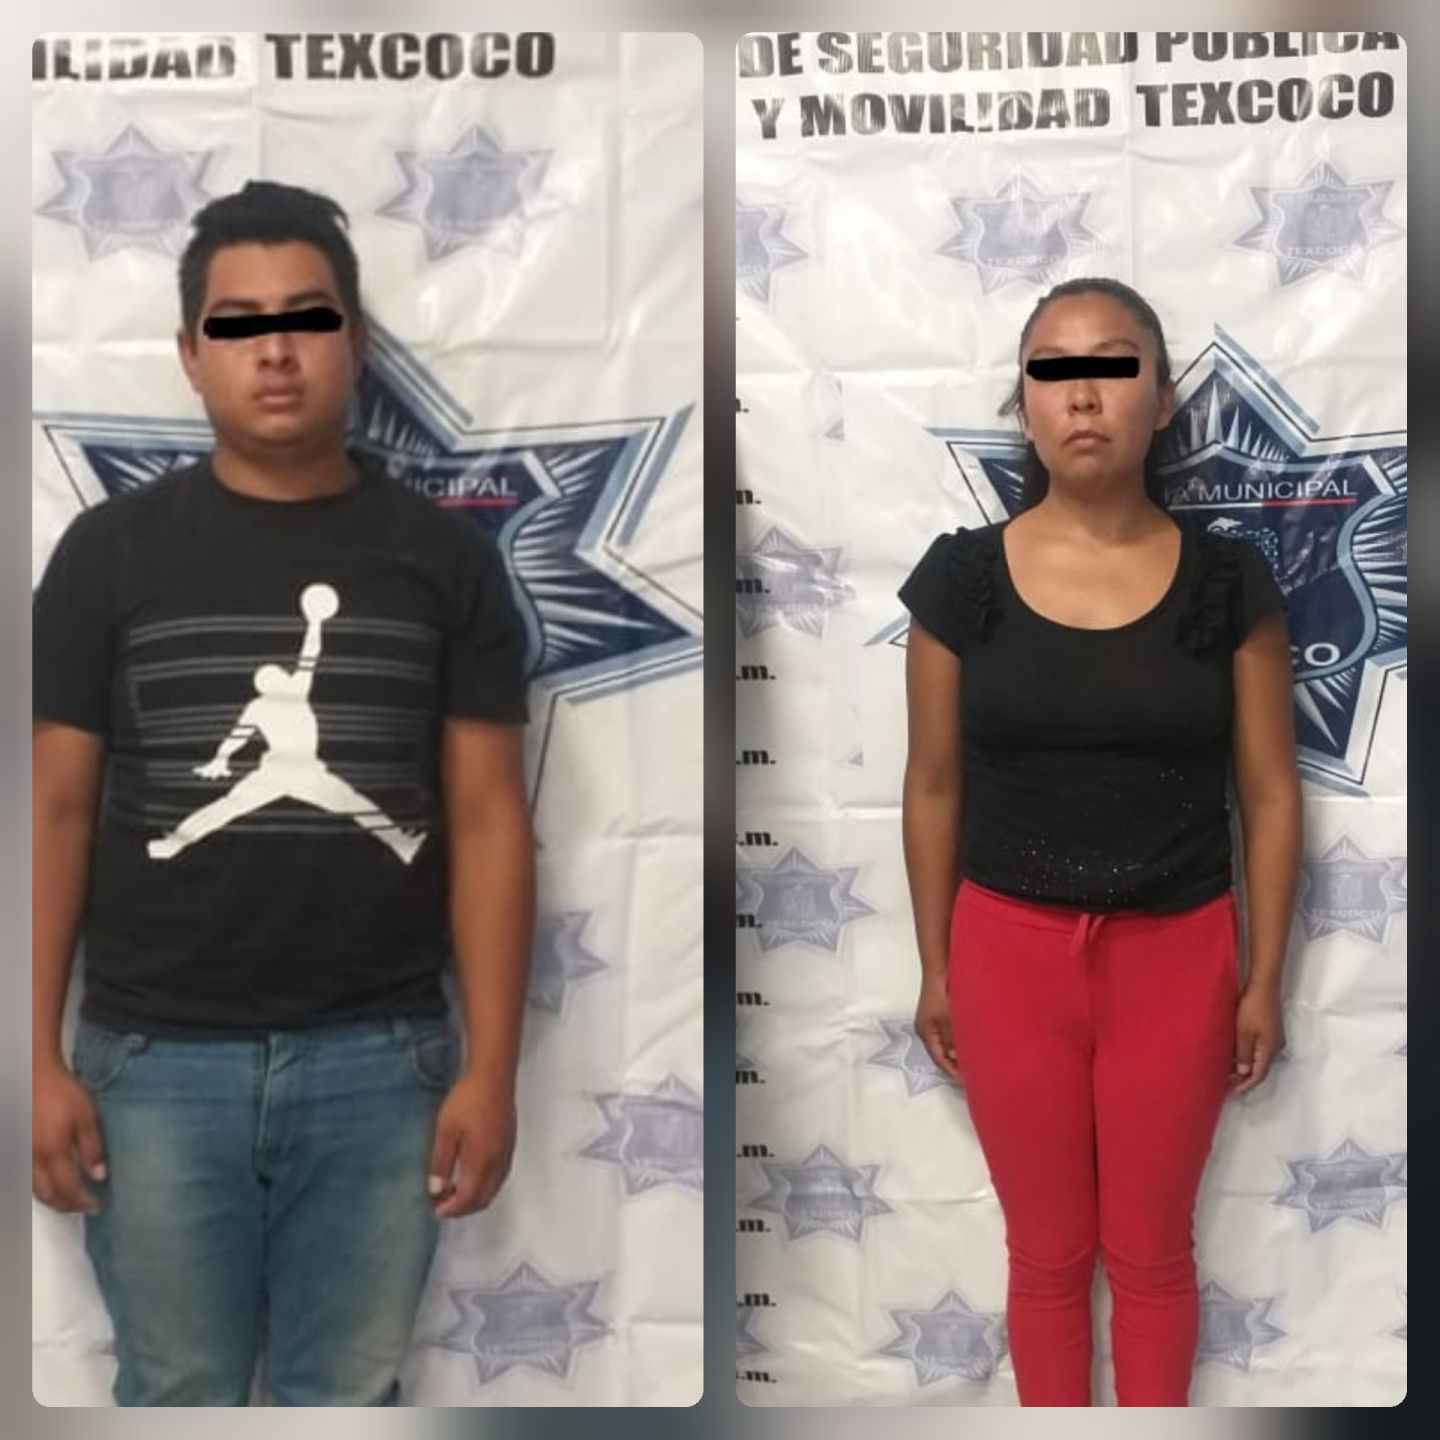 Policías municipales de Texcoco aseguraron a dos presuntos responsables del delito de extorsión